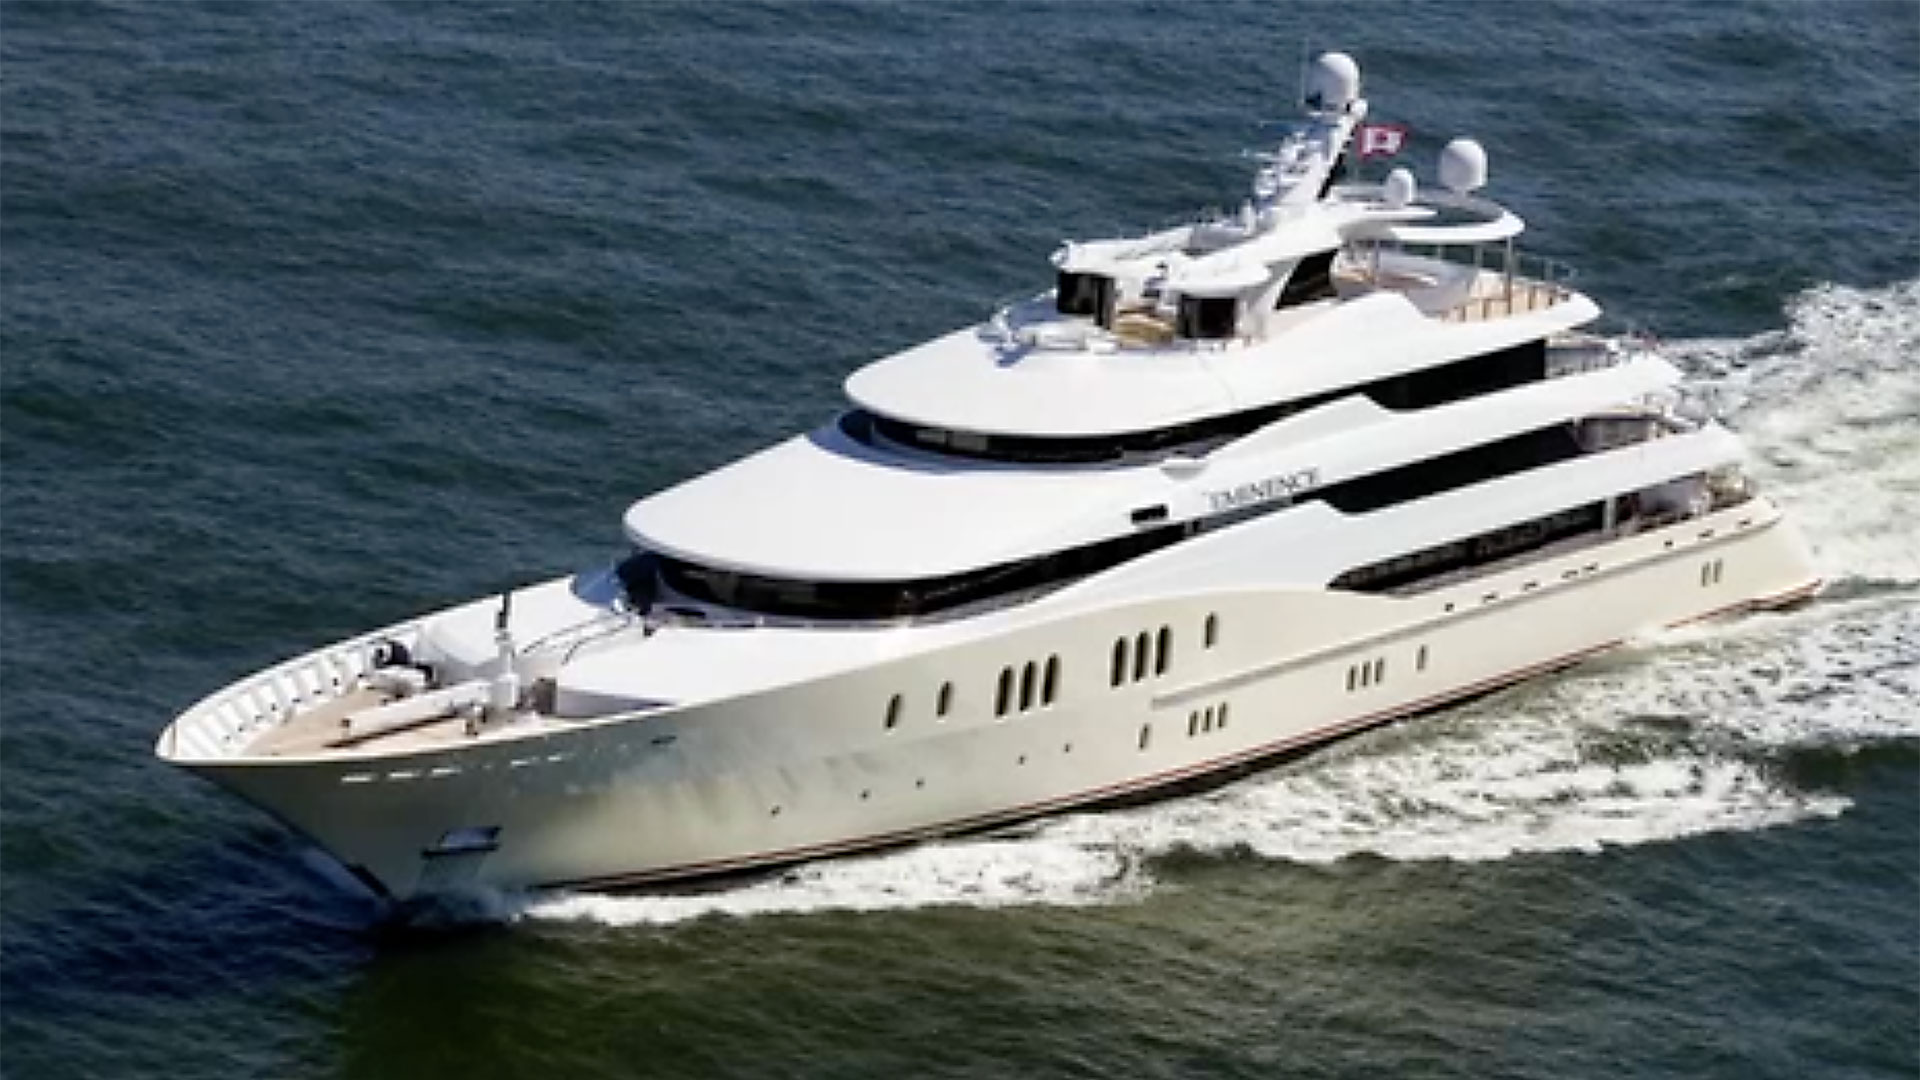 Luxus-Yacht von oben